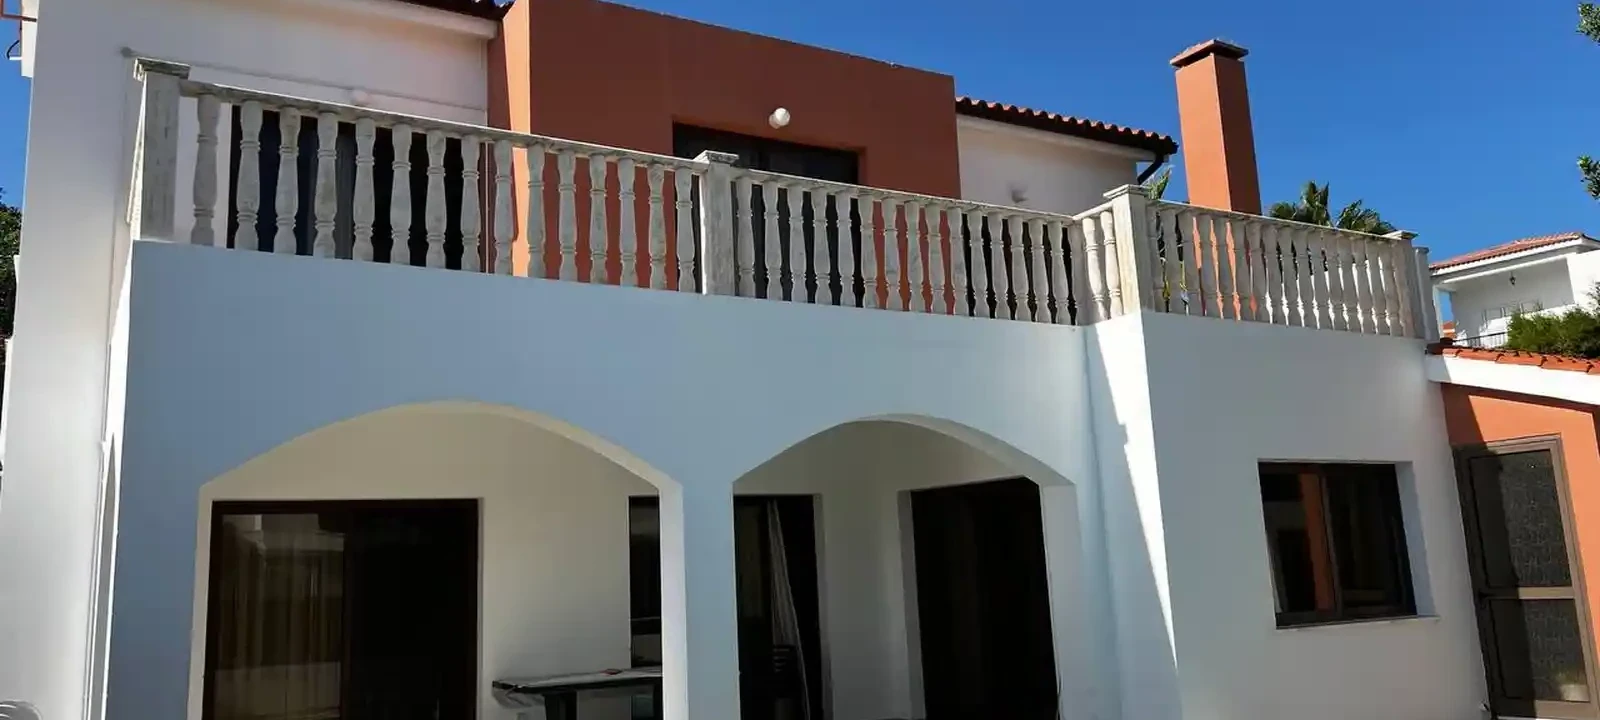 4-bedroom villa to rent €1.750, image 1